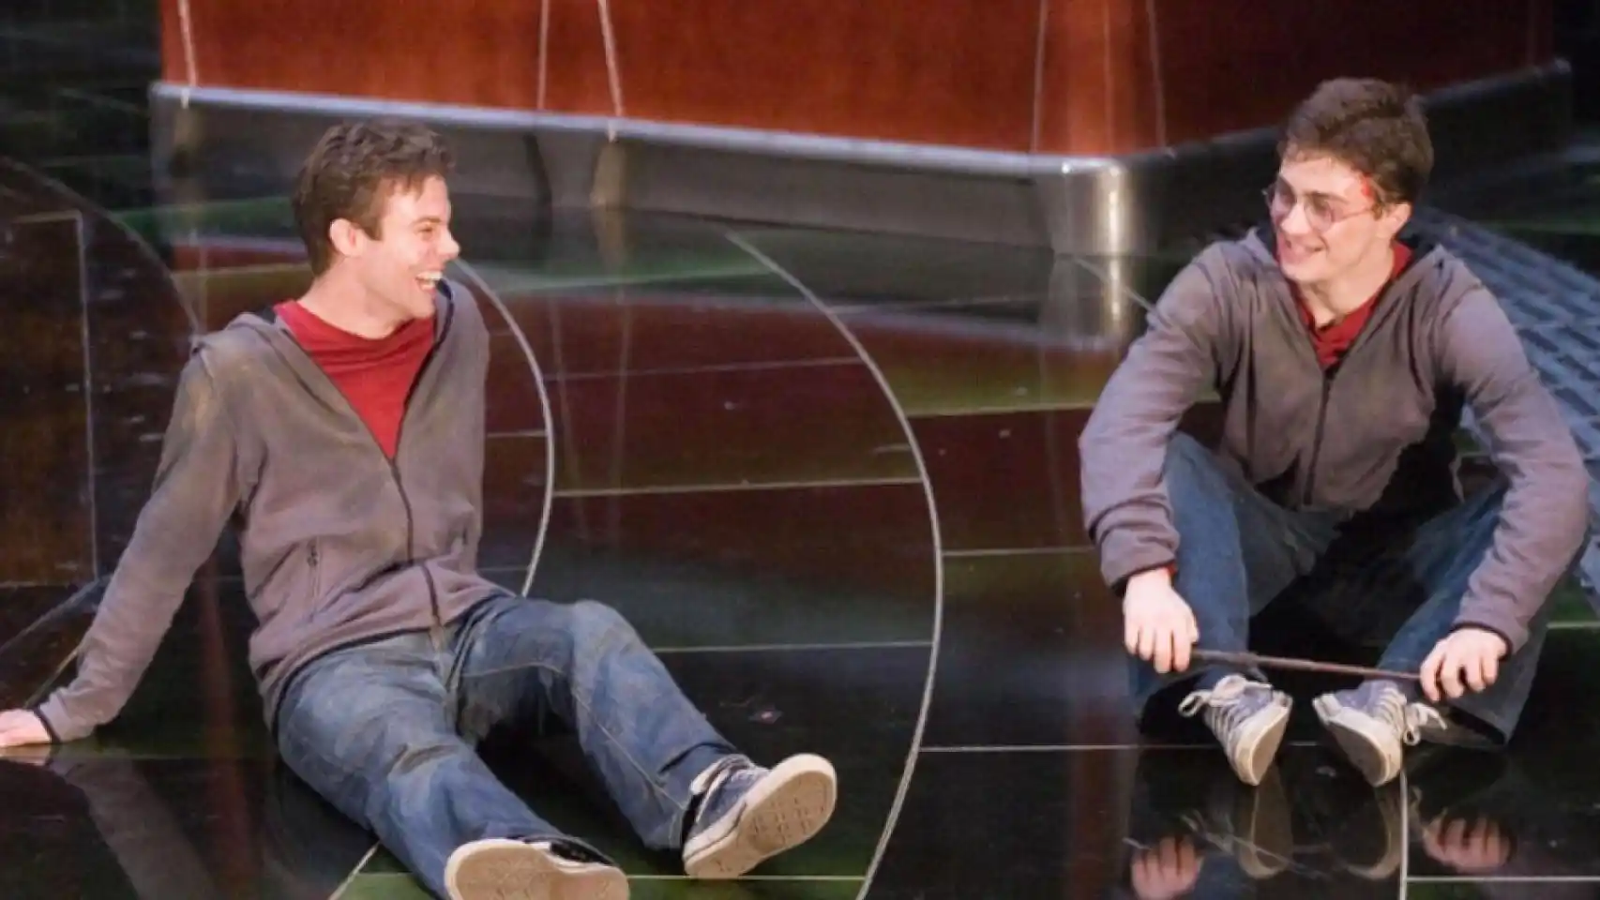 Daniel Radcliffe junto a David Holmes. Ambos llevan puesta la misma ropa interpretando a Harry Potter. Lucen un par de jeans, zapatillas azules, polerón con cierre color café y una polera roja. Están sentados en el suelo.